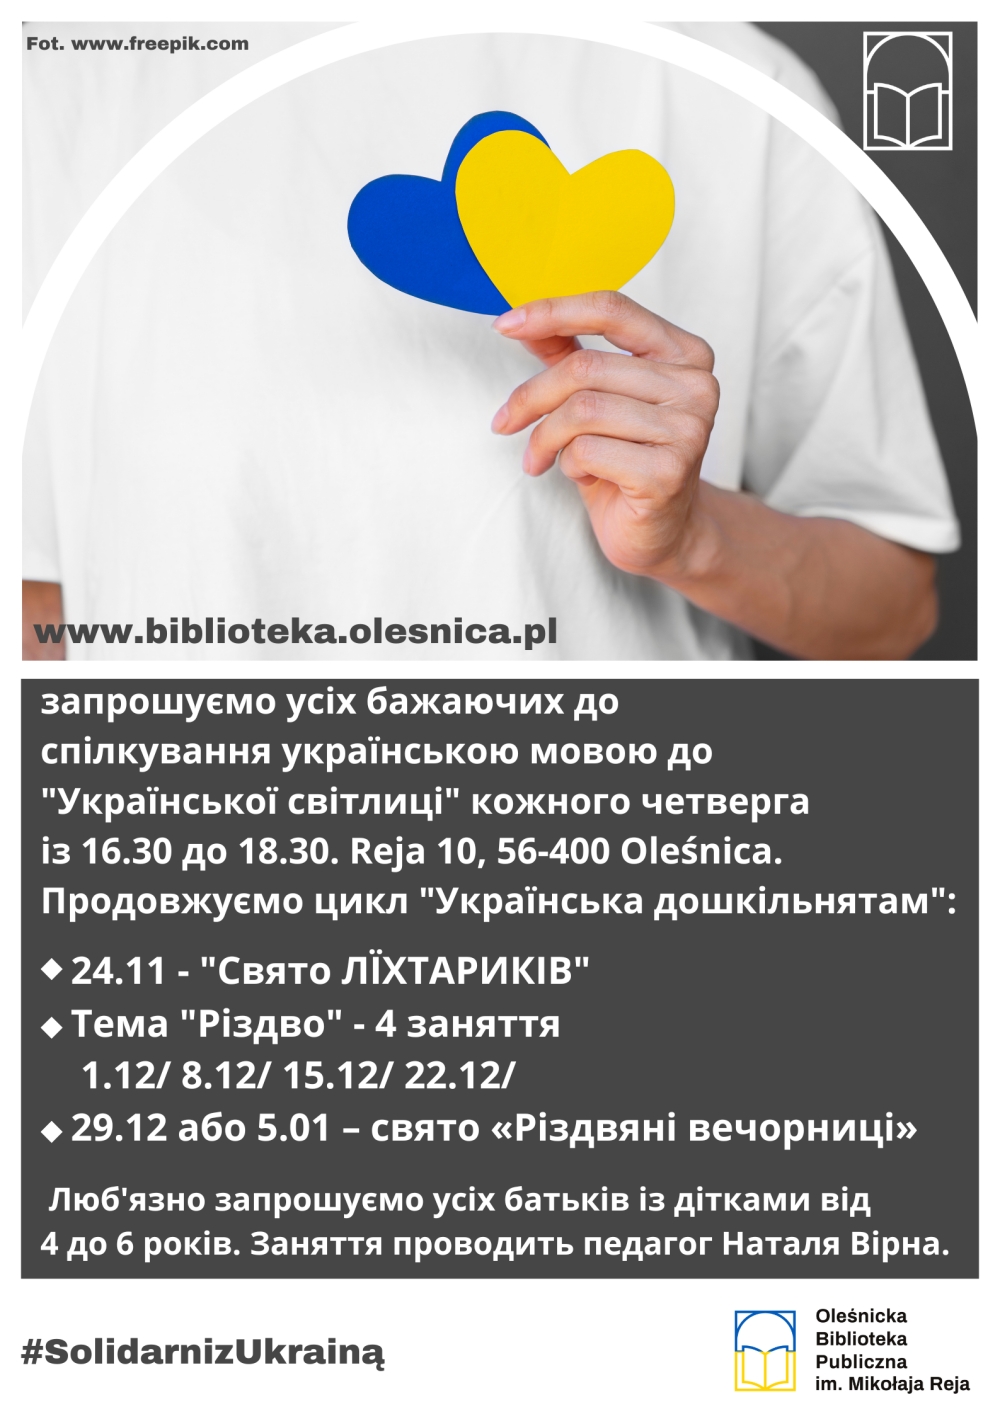 Informacja o czwartkowych spotkaniach w języku ukraińskim